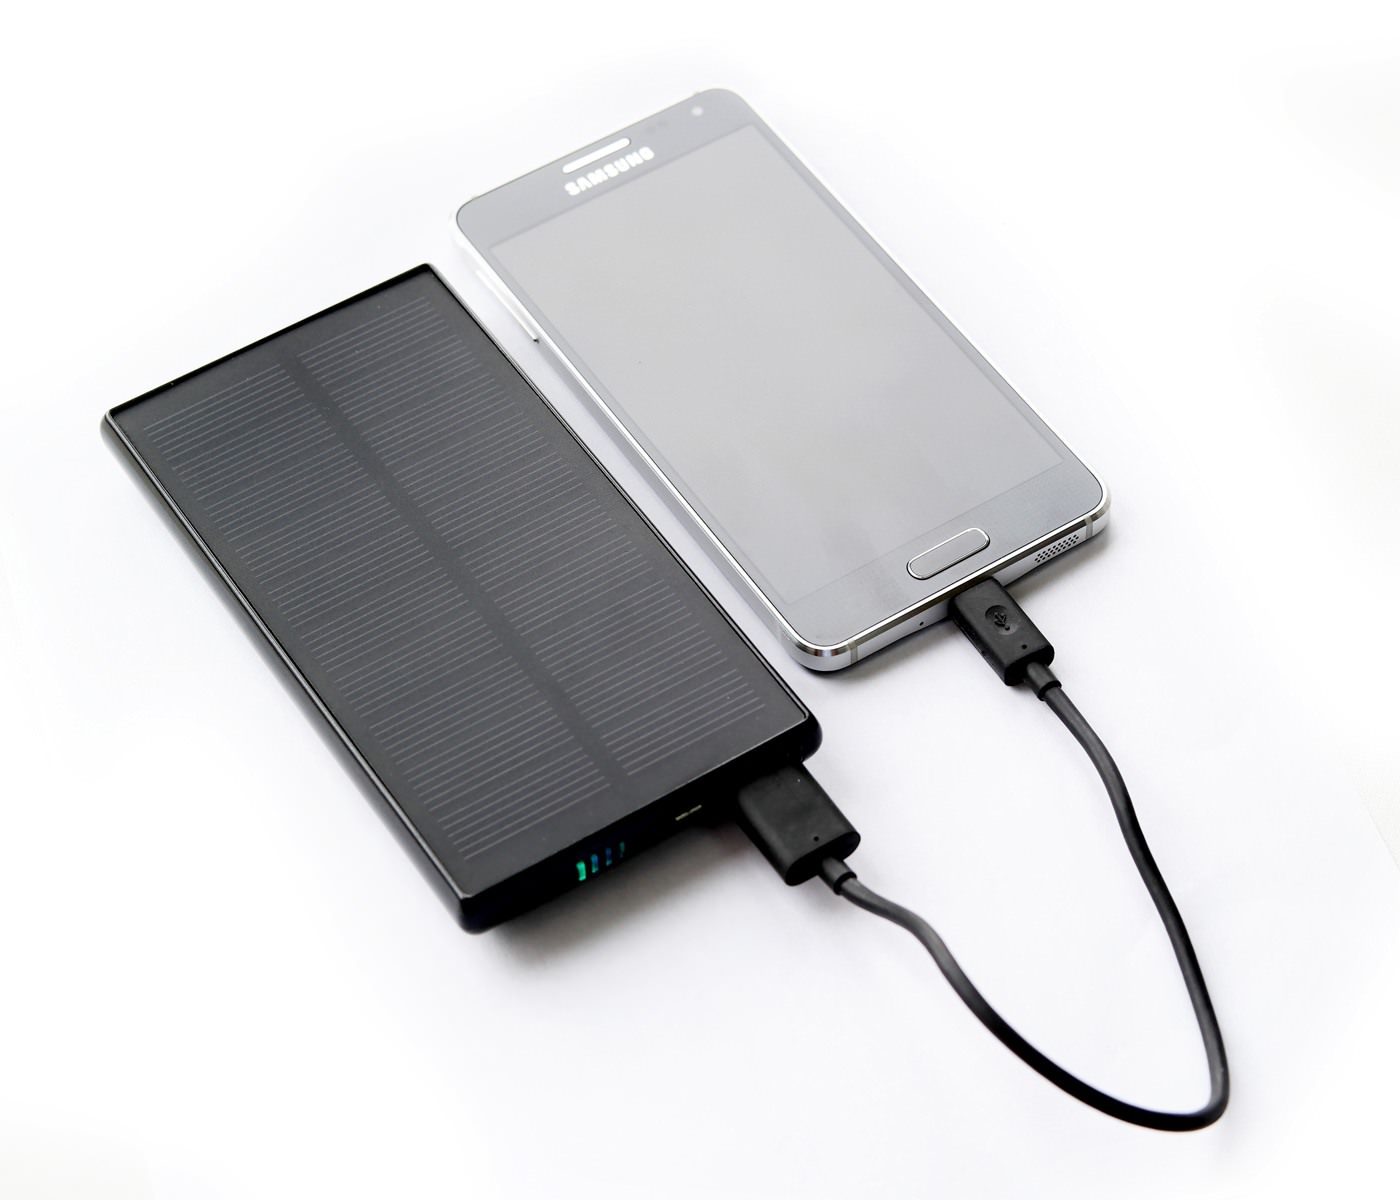 Battery зарядка. Аккумулятор SITITEK Sun-Battery SC-09. SITITEK Sun-Battery Duos. Pb04 Powerbank со встроенной солнечной батареей 25000mah. Солнечное зарядное устройство CHOETECH sc004.